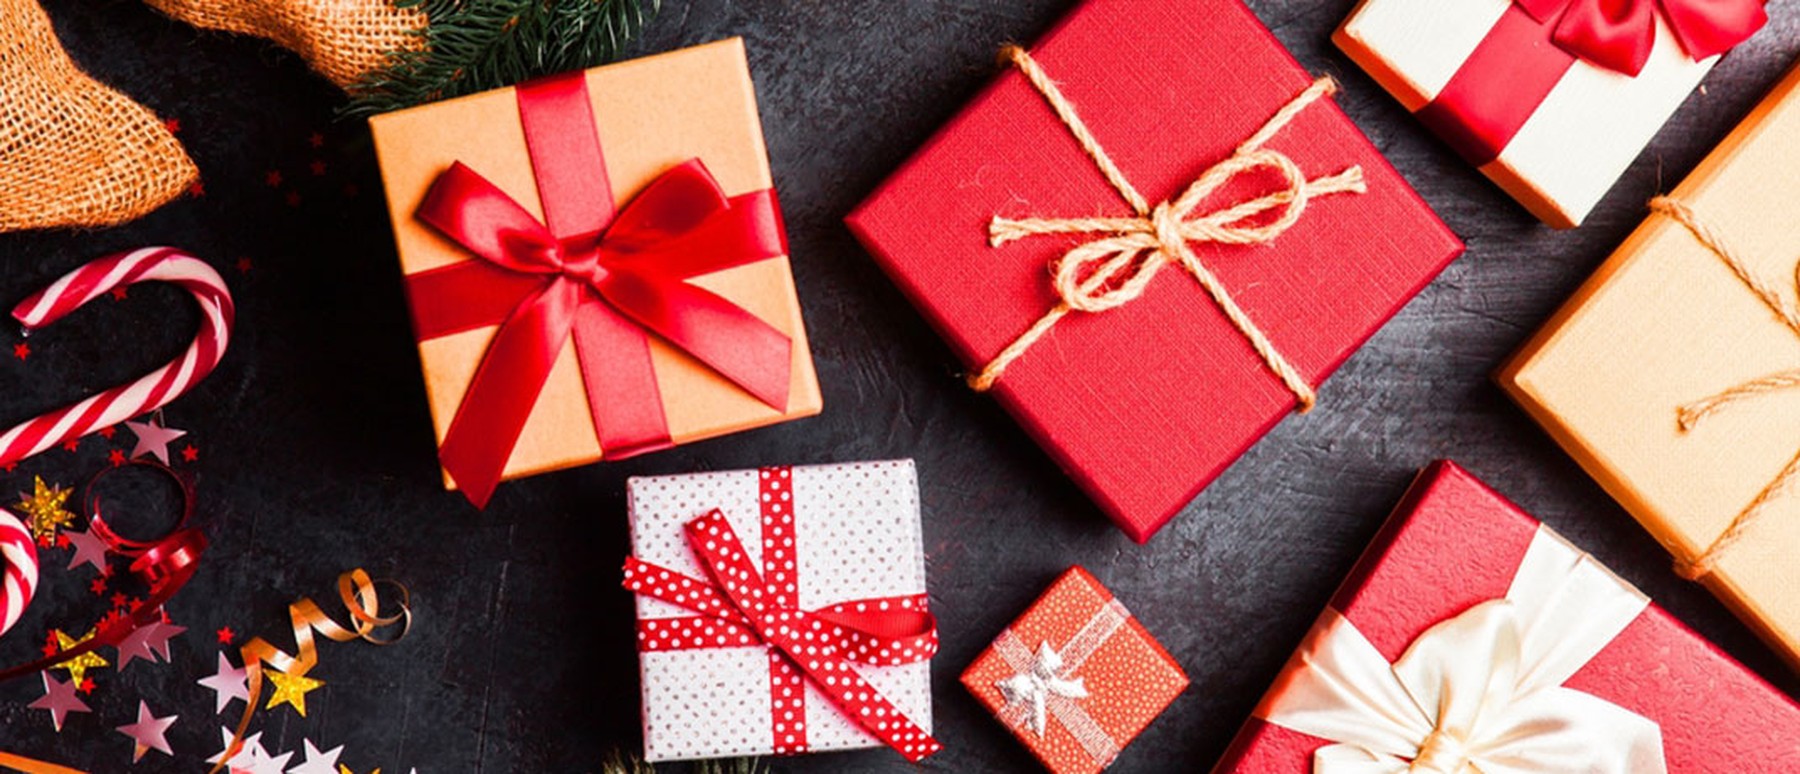 De 10 beste tips voor goedkope sinterklaas- en kerstcadeaus